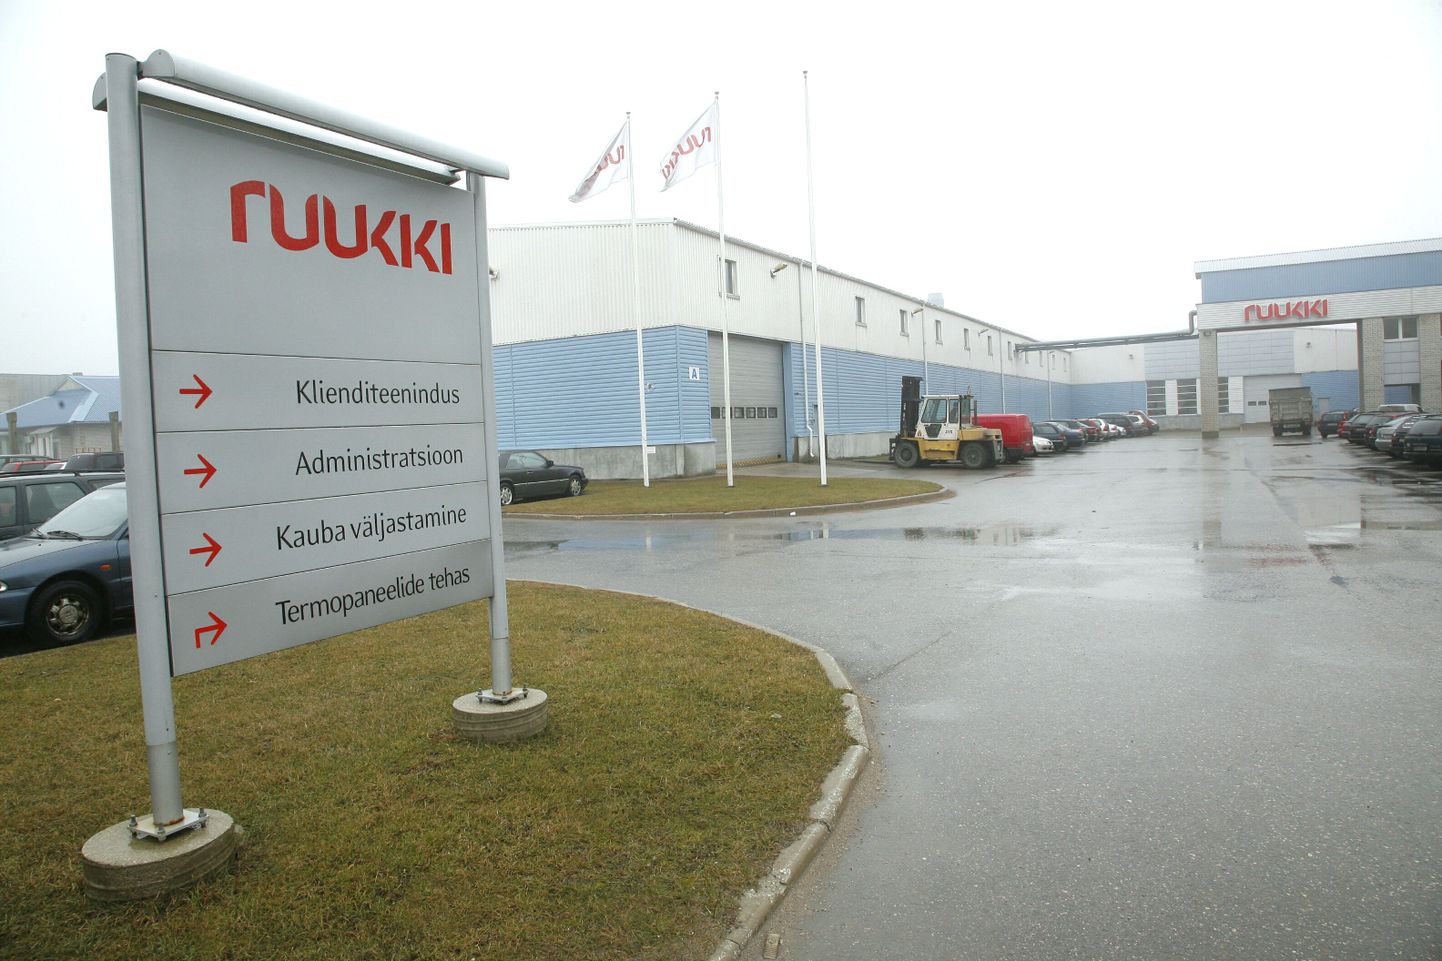 Terasest ehitusmaterjalide tootja Rautaruukki koondab tootmise Baltikumis Pärnu tehasesse.